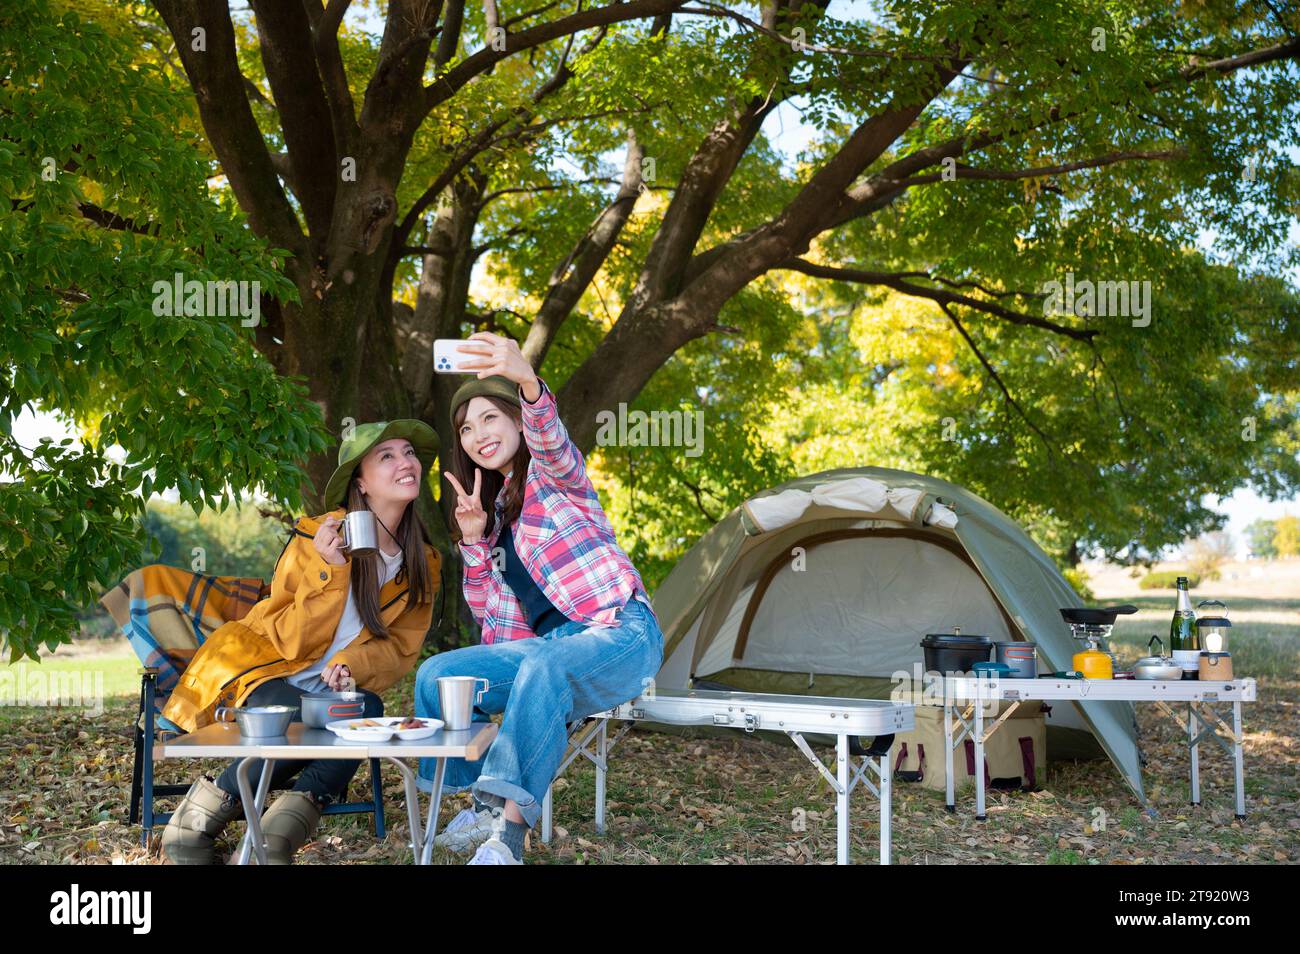 Two women enjoying camping Stock Photo